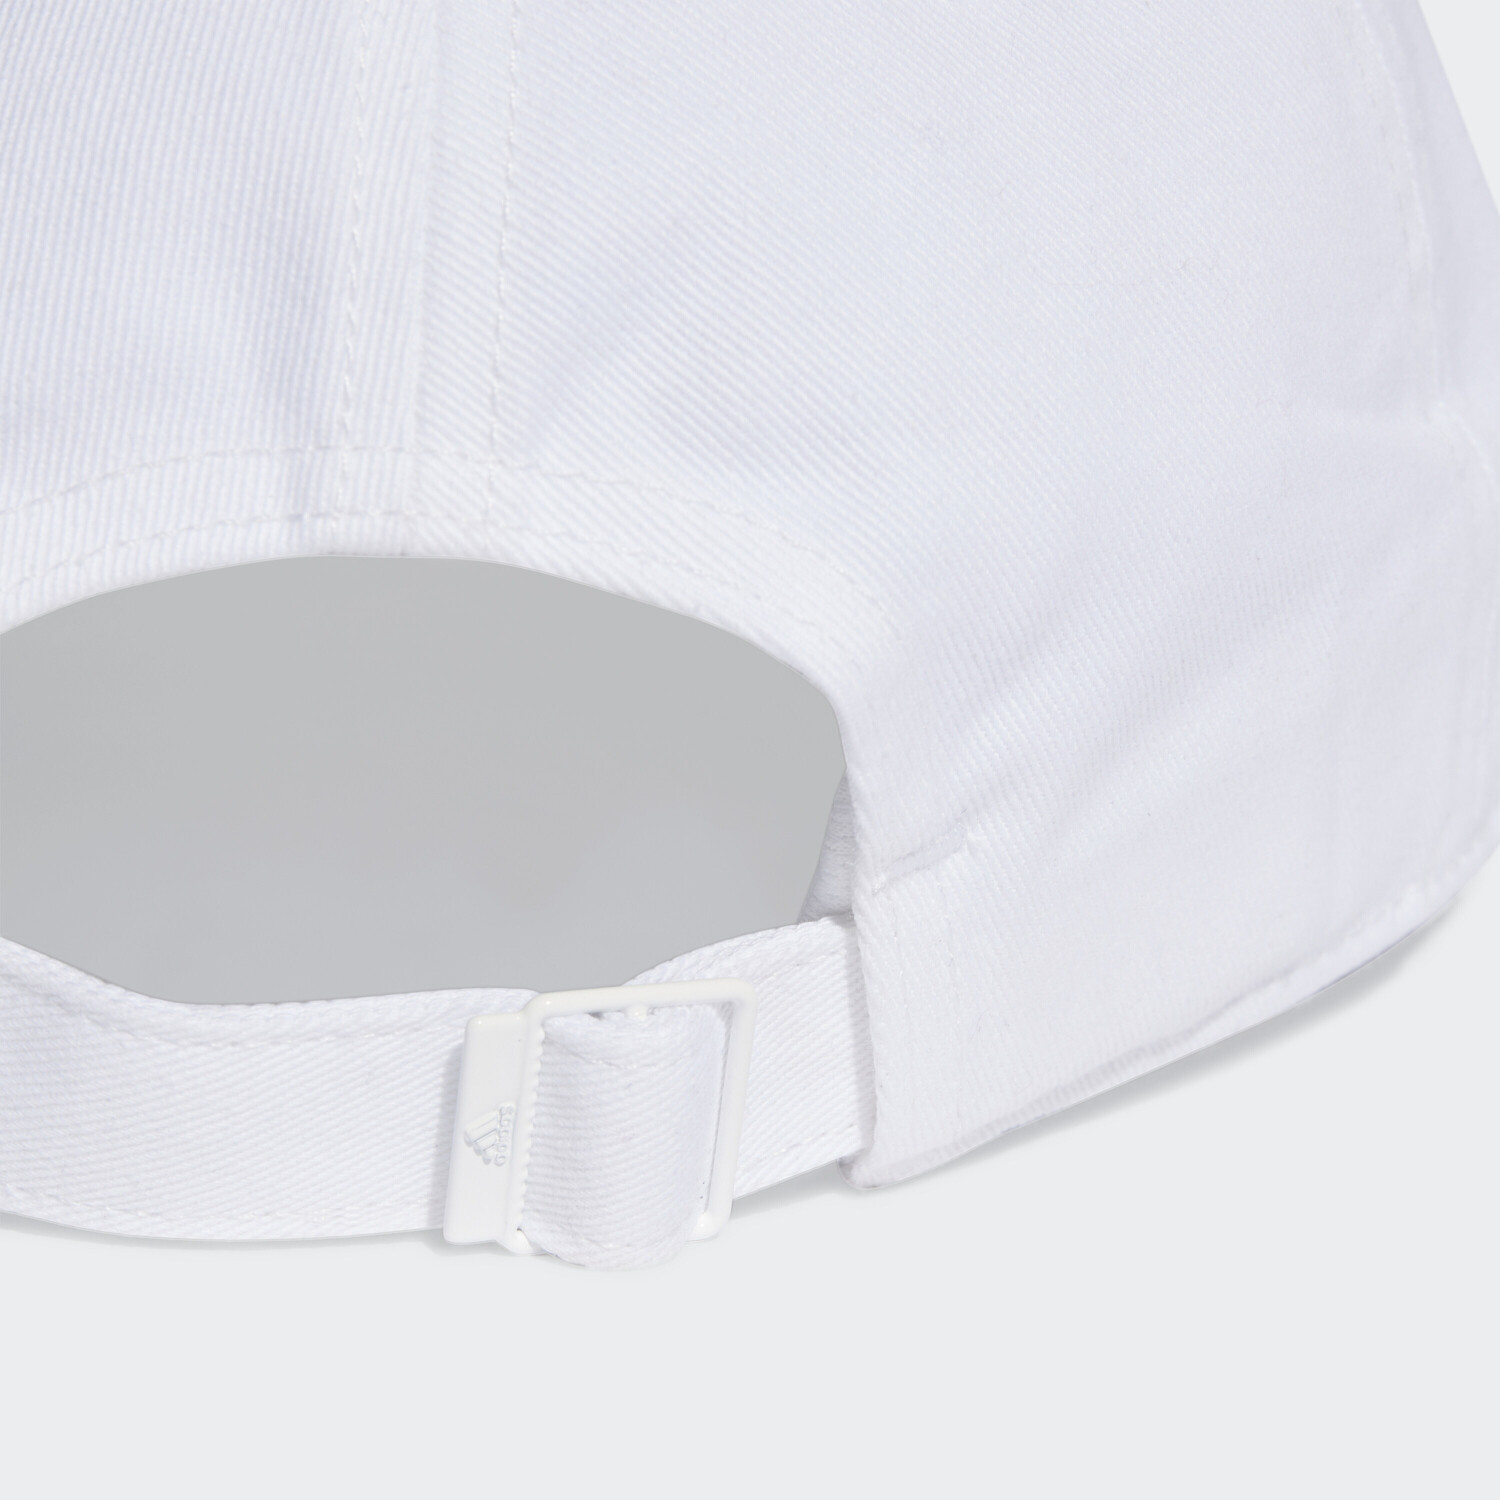 Adidas Baseball 3-Streifen Cotton Twill Baseball Kappe (II3509) white/black  twill ab 12,99 € | Preisvergleich bei